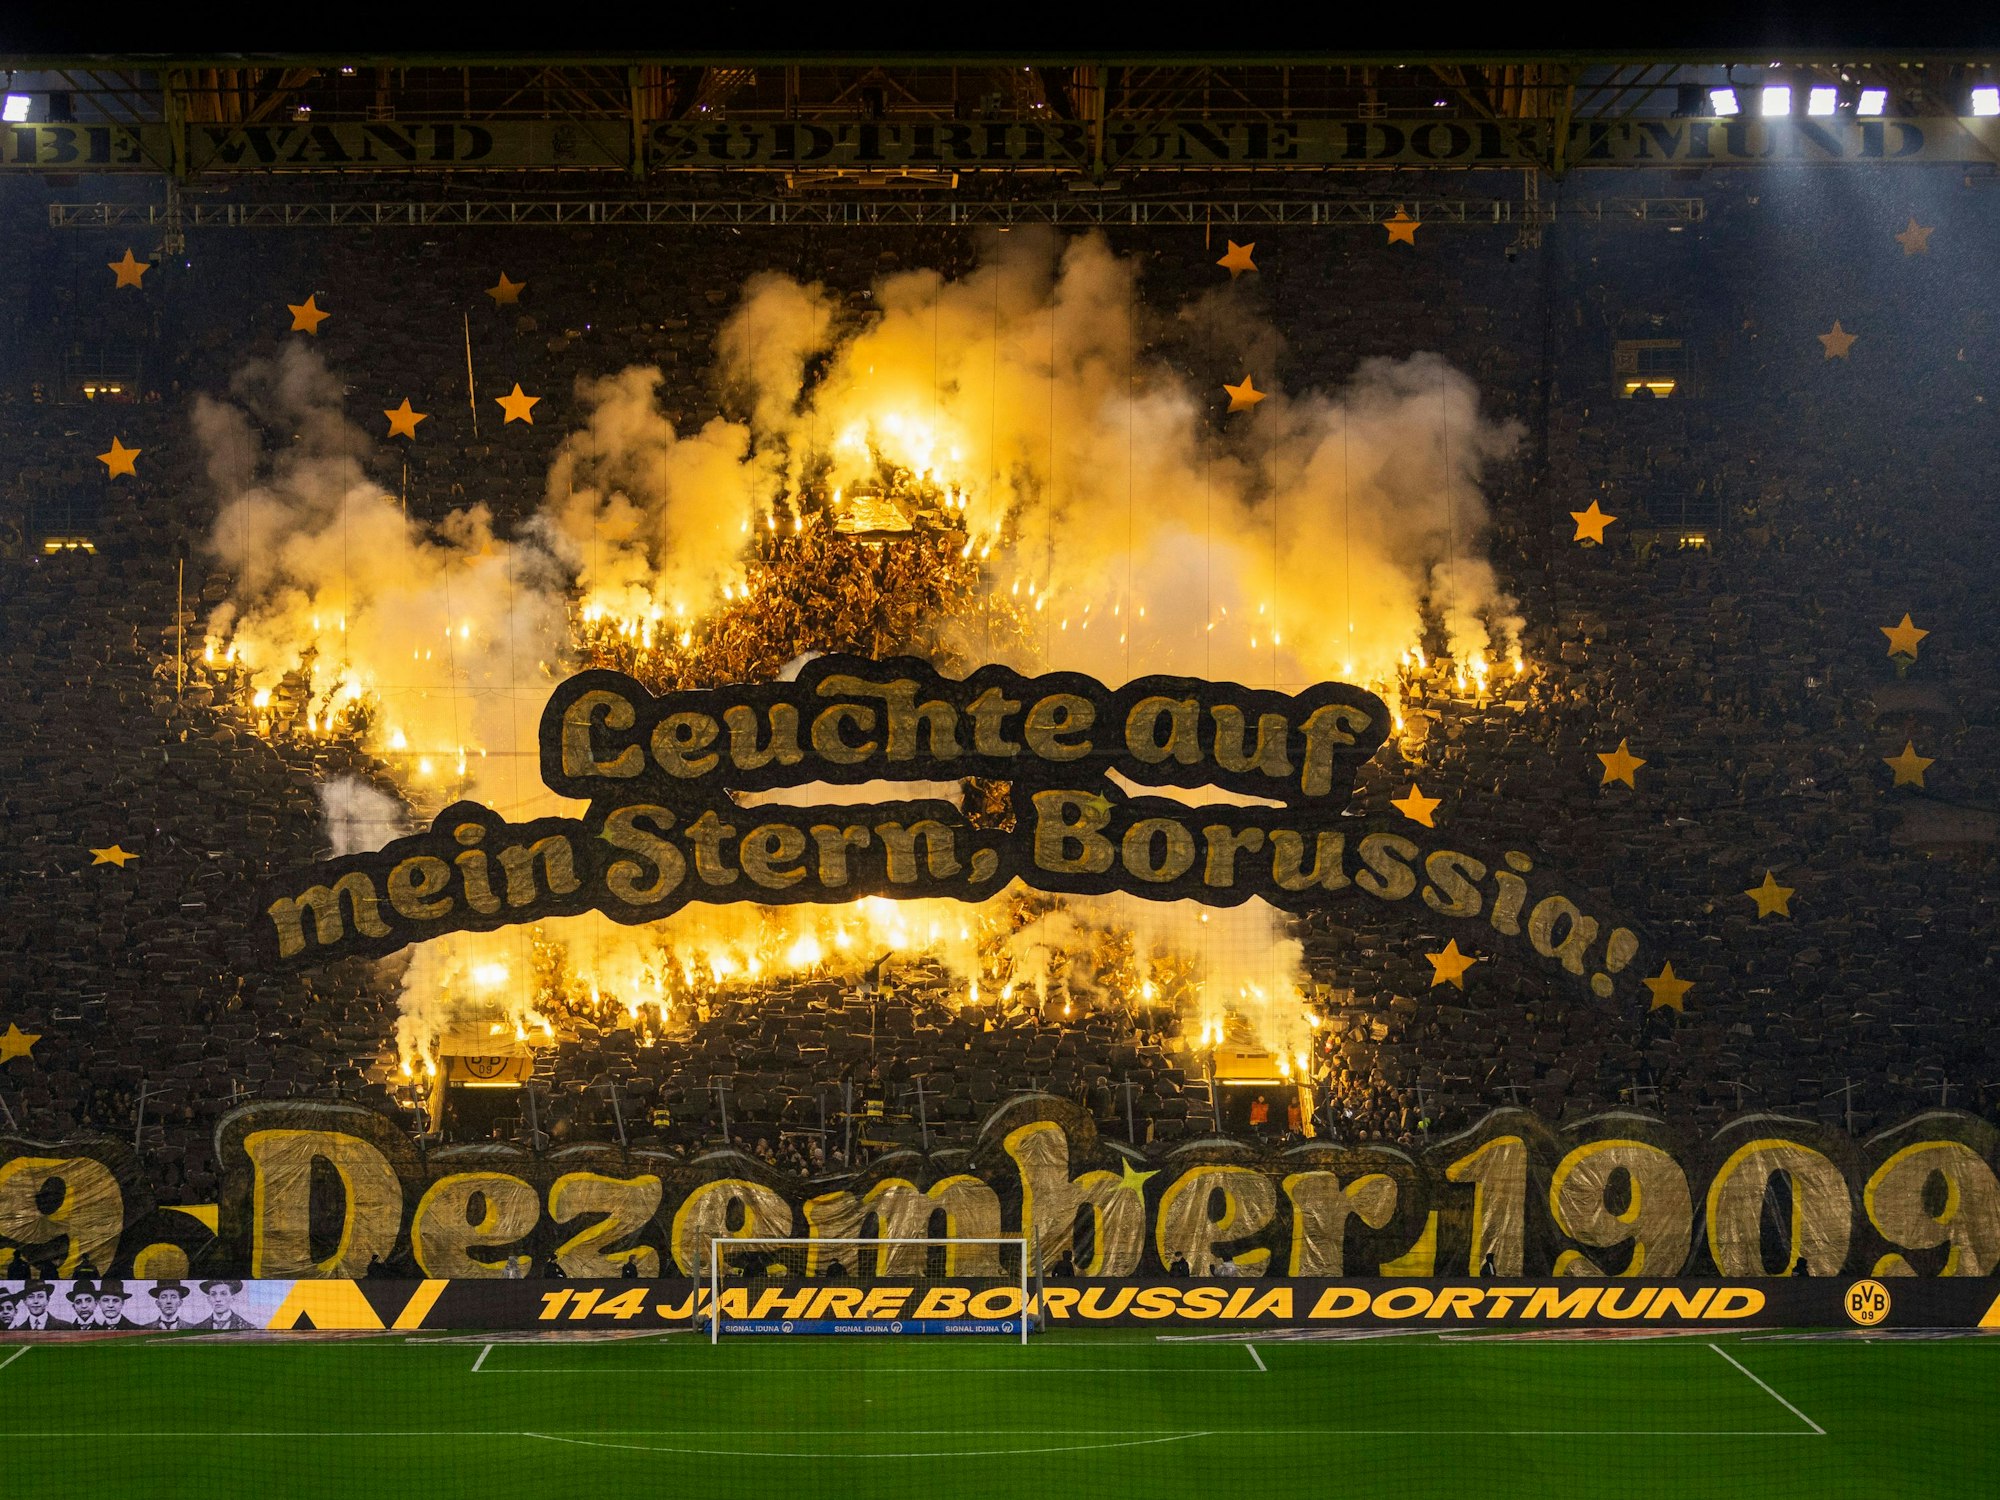 BVB-Fans feiern den 114. Geburtstag von Borussia Dortmund